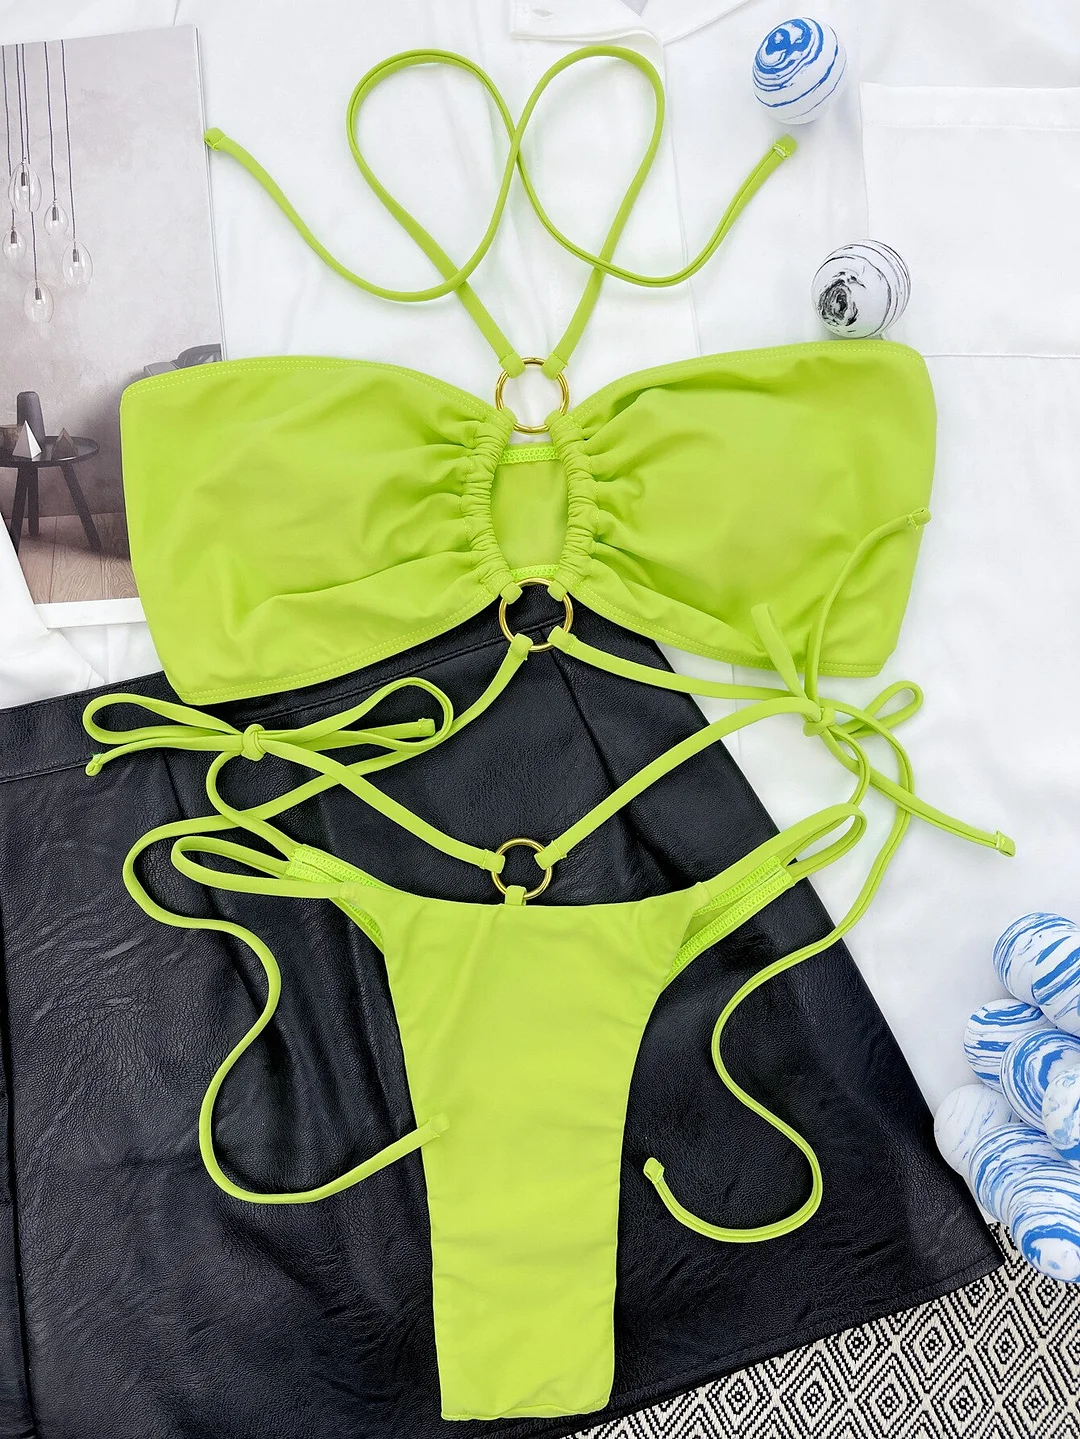 Billionm Neon Green Ruched Bikinis Stylish Halter Swimsuit Woman Cut Out Swimwear Set Woman 2 Pieces Lace Up Low Waist Swimwear